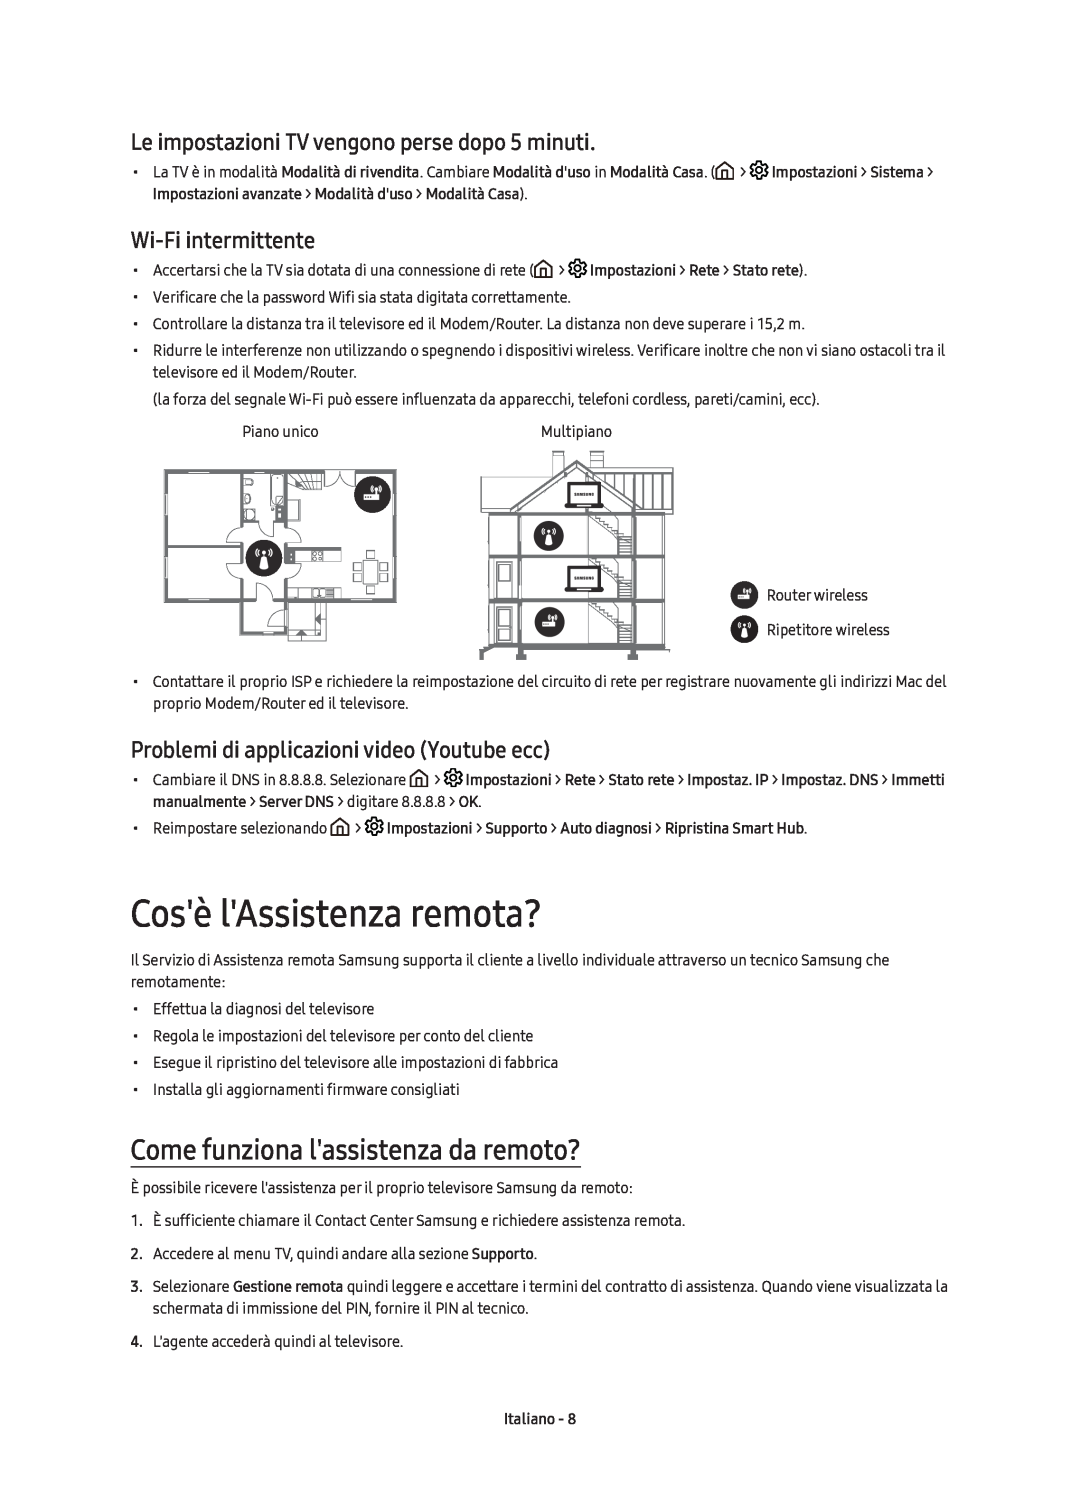 Samsung UE49KU6500UXZT manual Cosè lAssistenza remota?, Come funziona lassistenza da remoto?, Wi-Fi intermittente, Italiano 